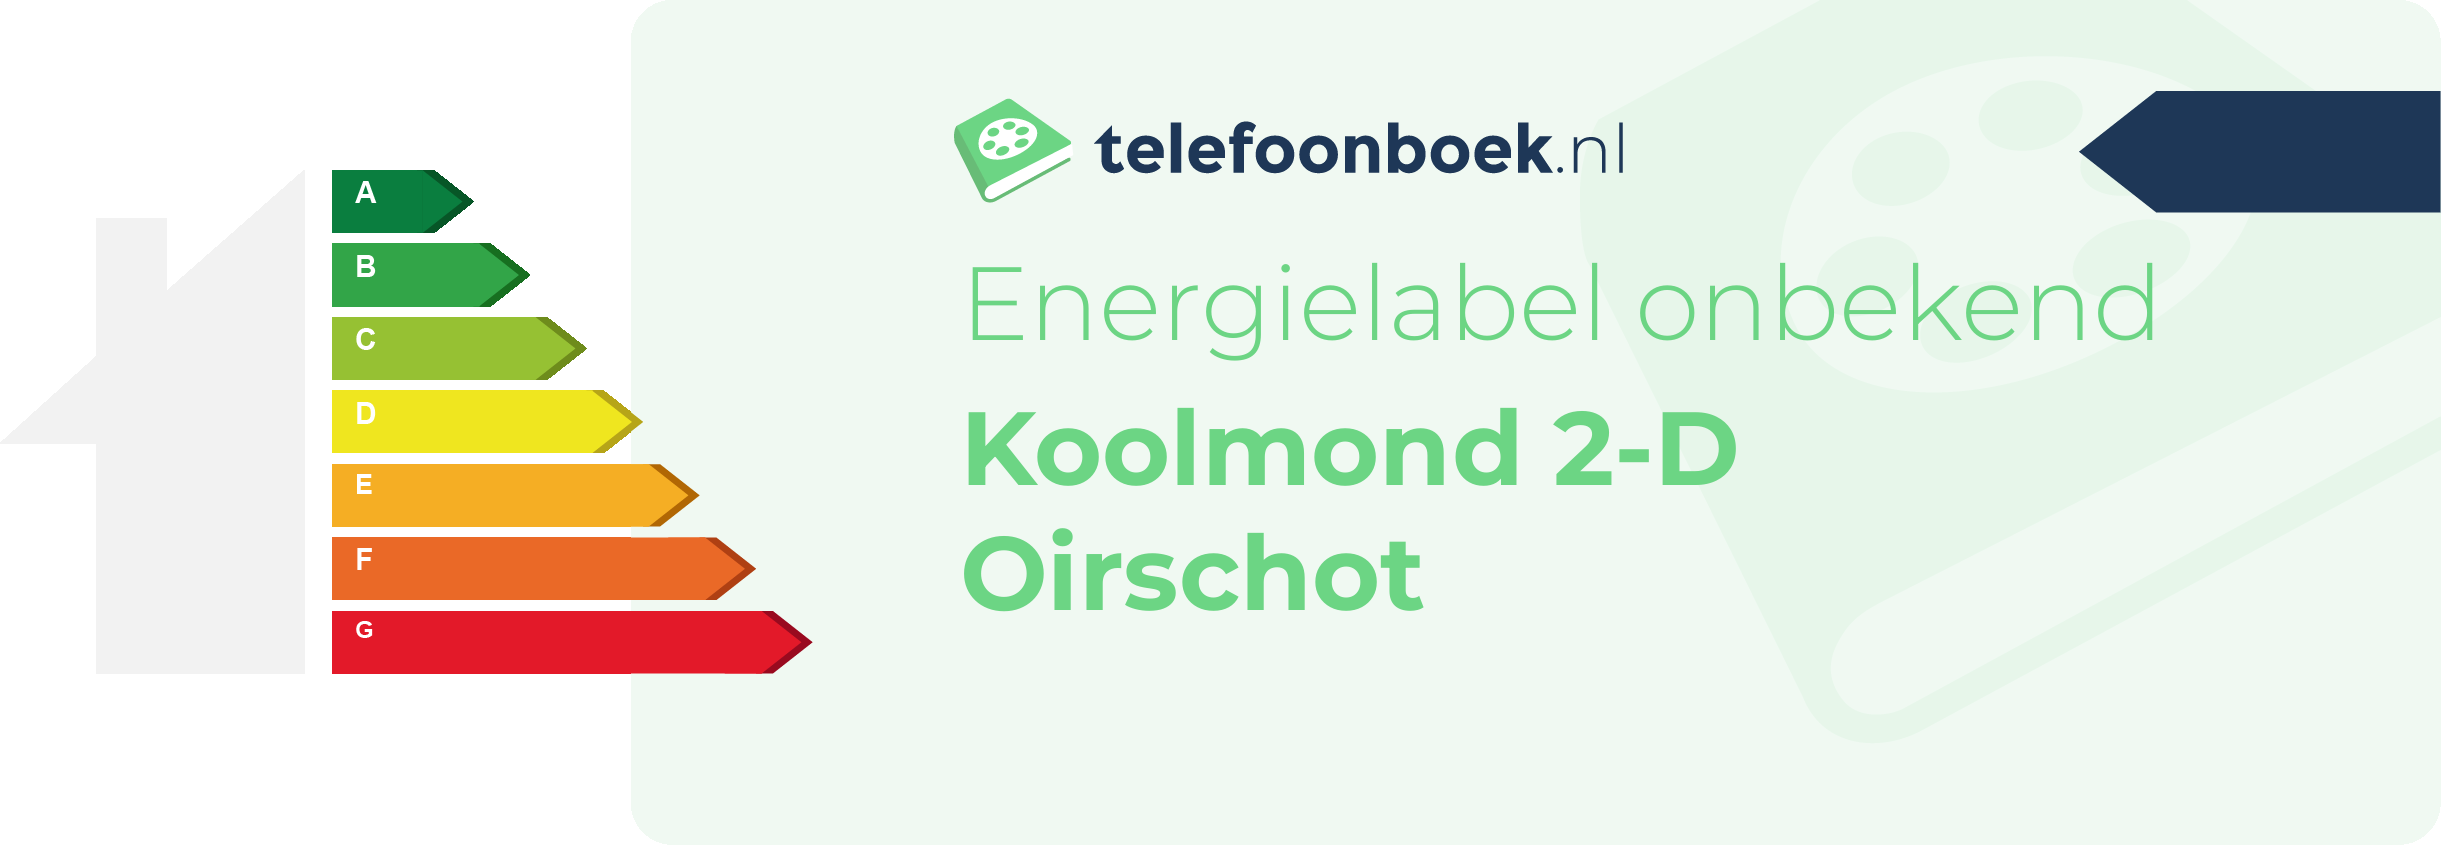 Energielabel Koolmond 2-D Oirschot